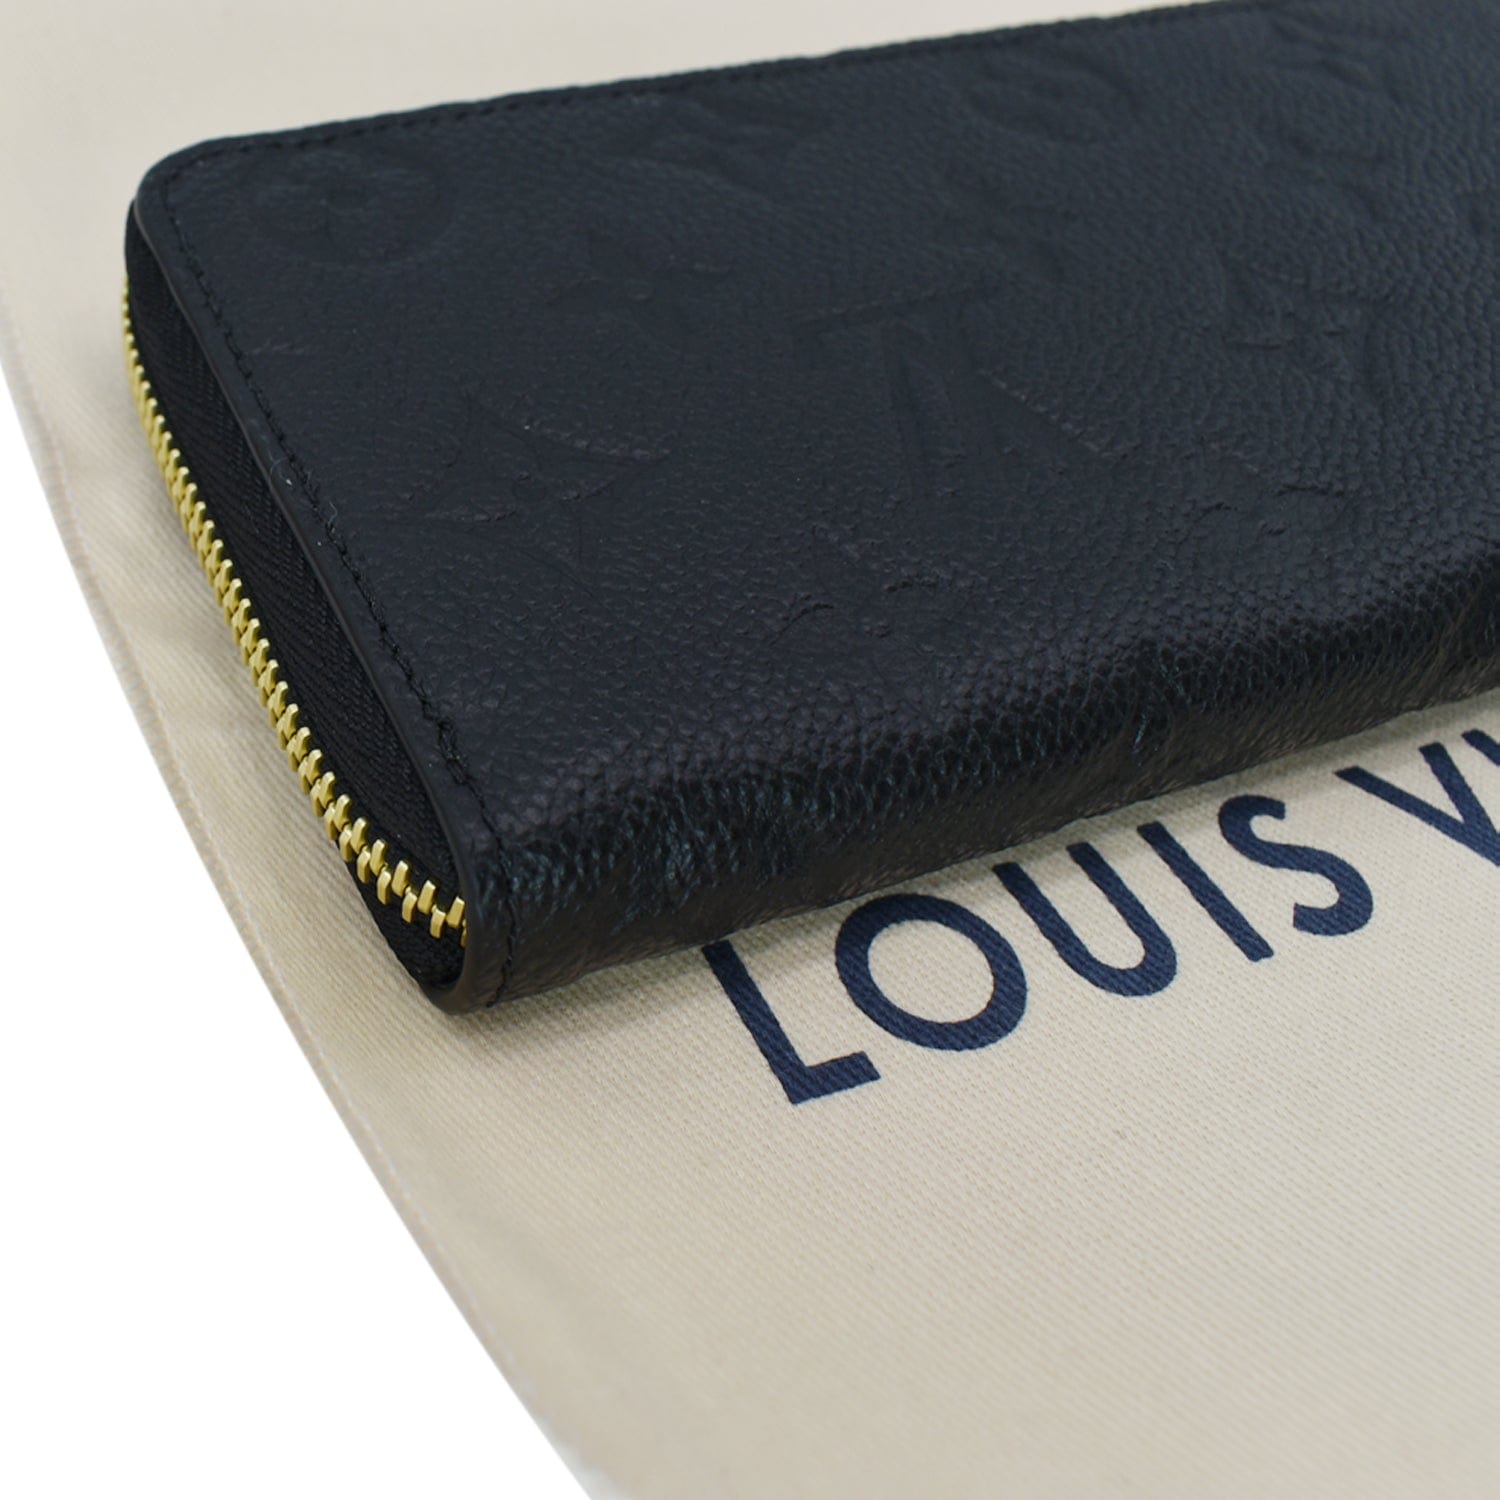 Preowned Authentic Louis Vuitton Empreinte Clemence Wallet Black